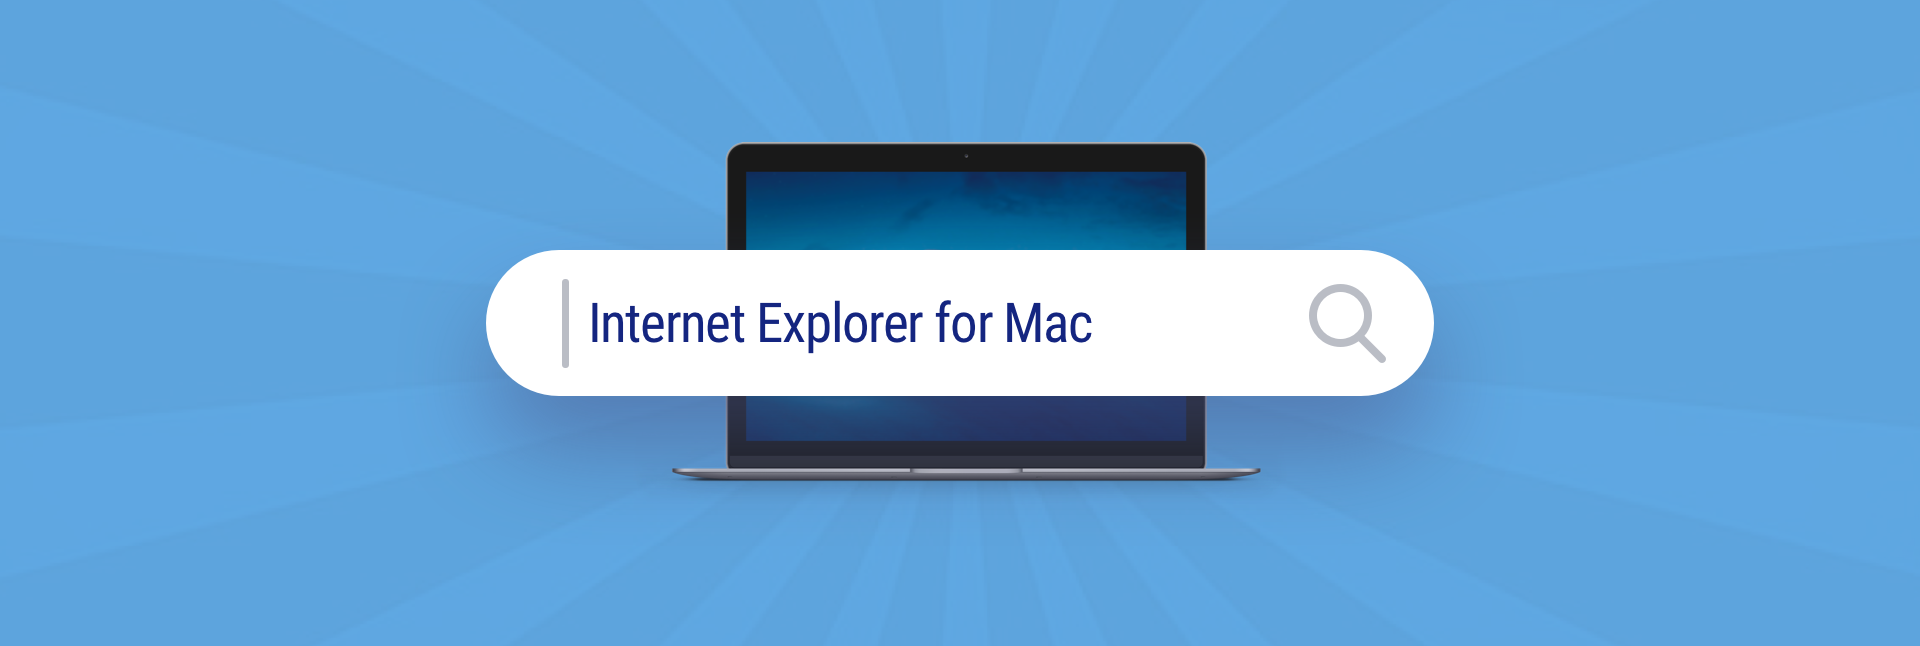 dl internet explorer for mac